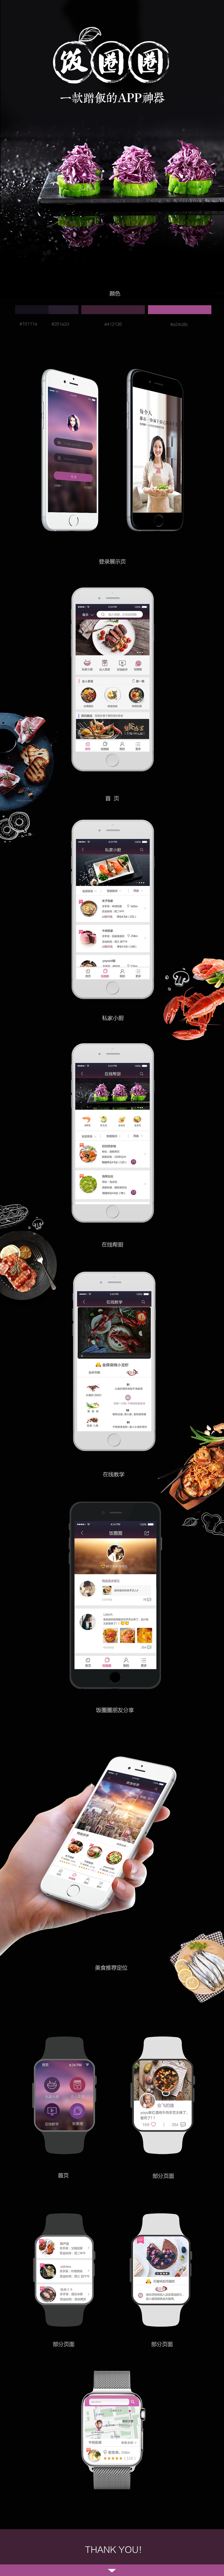 淘宝美工海带带一款关于美食的app作品